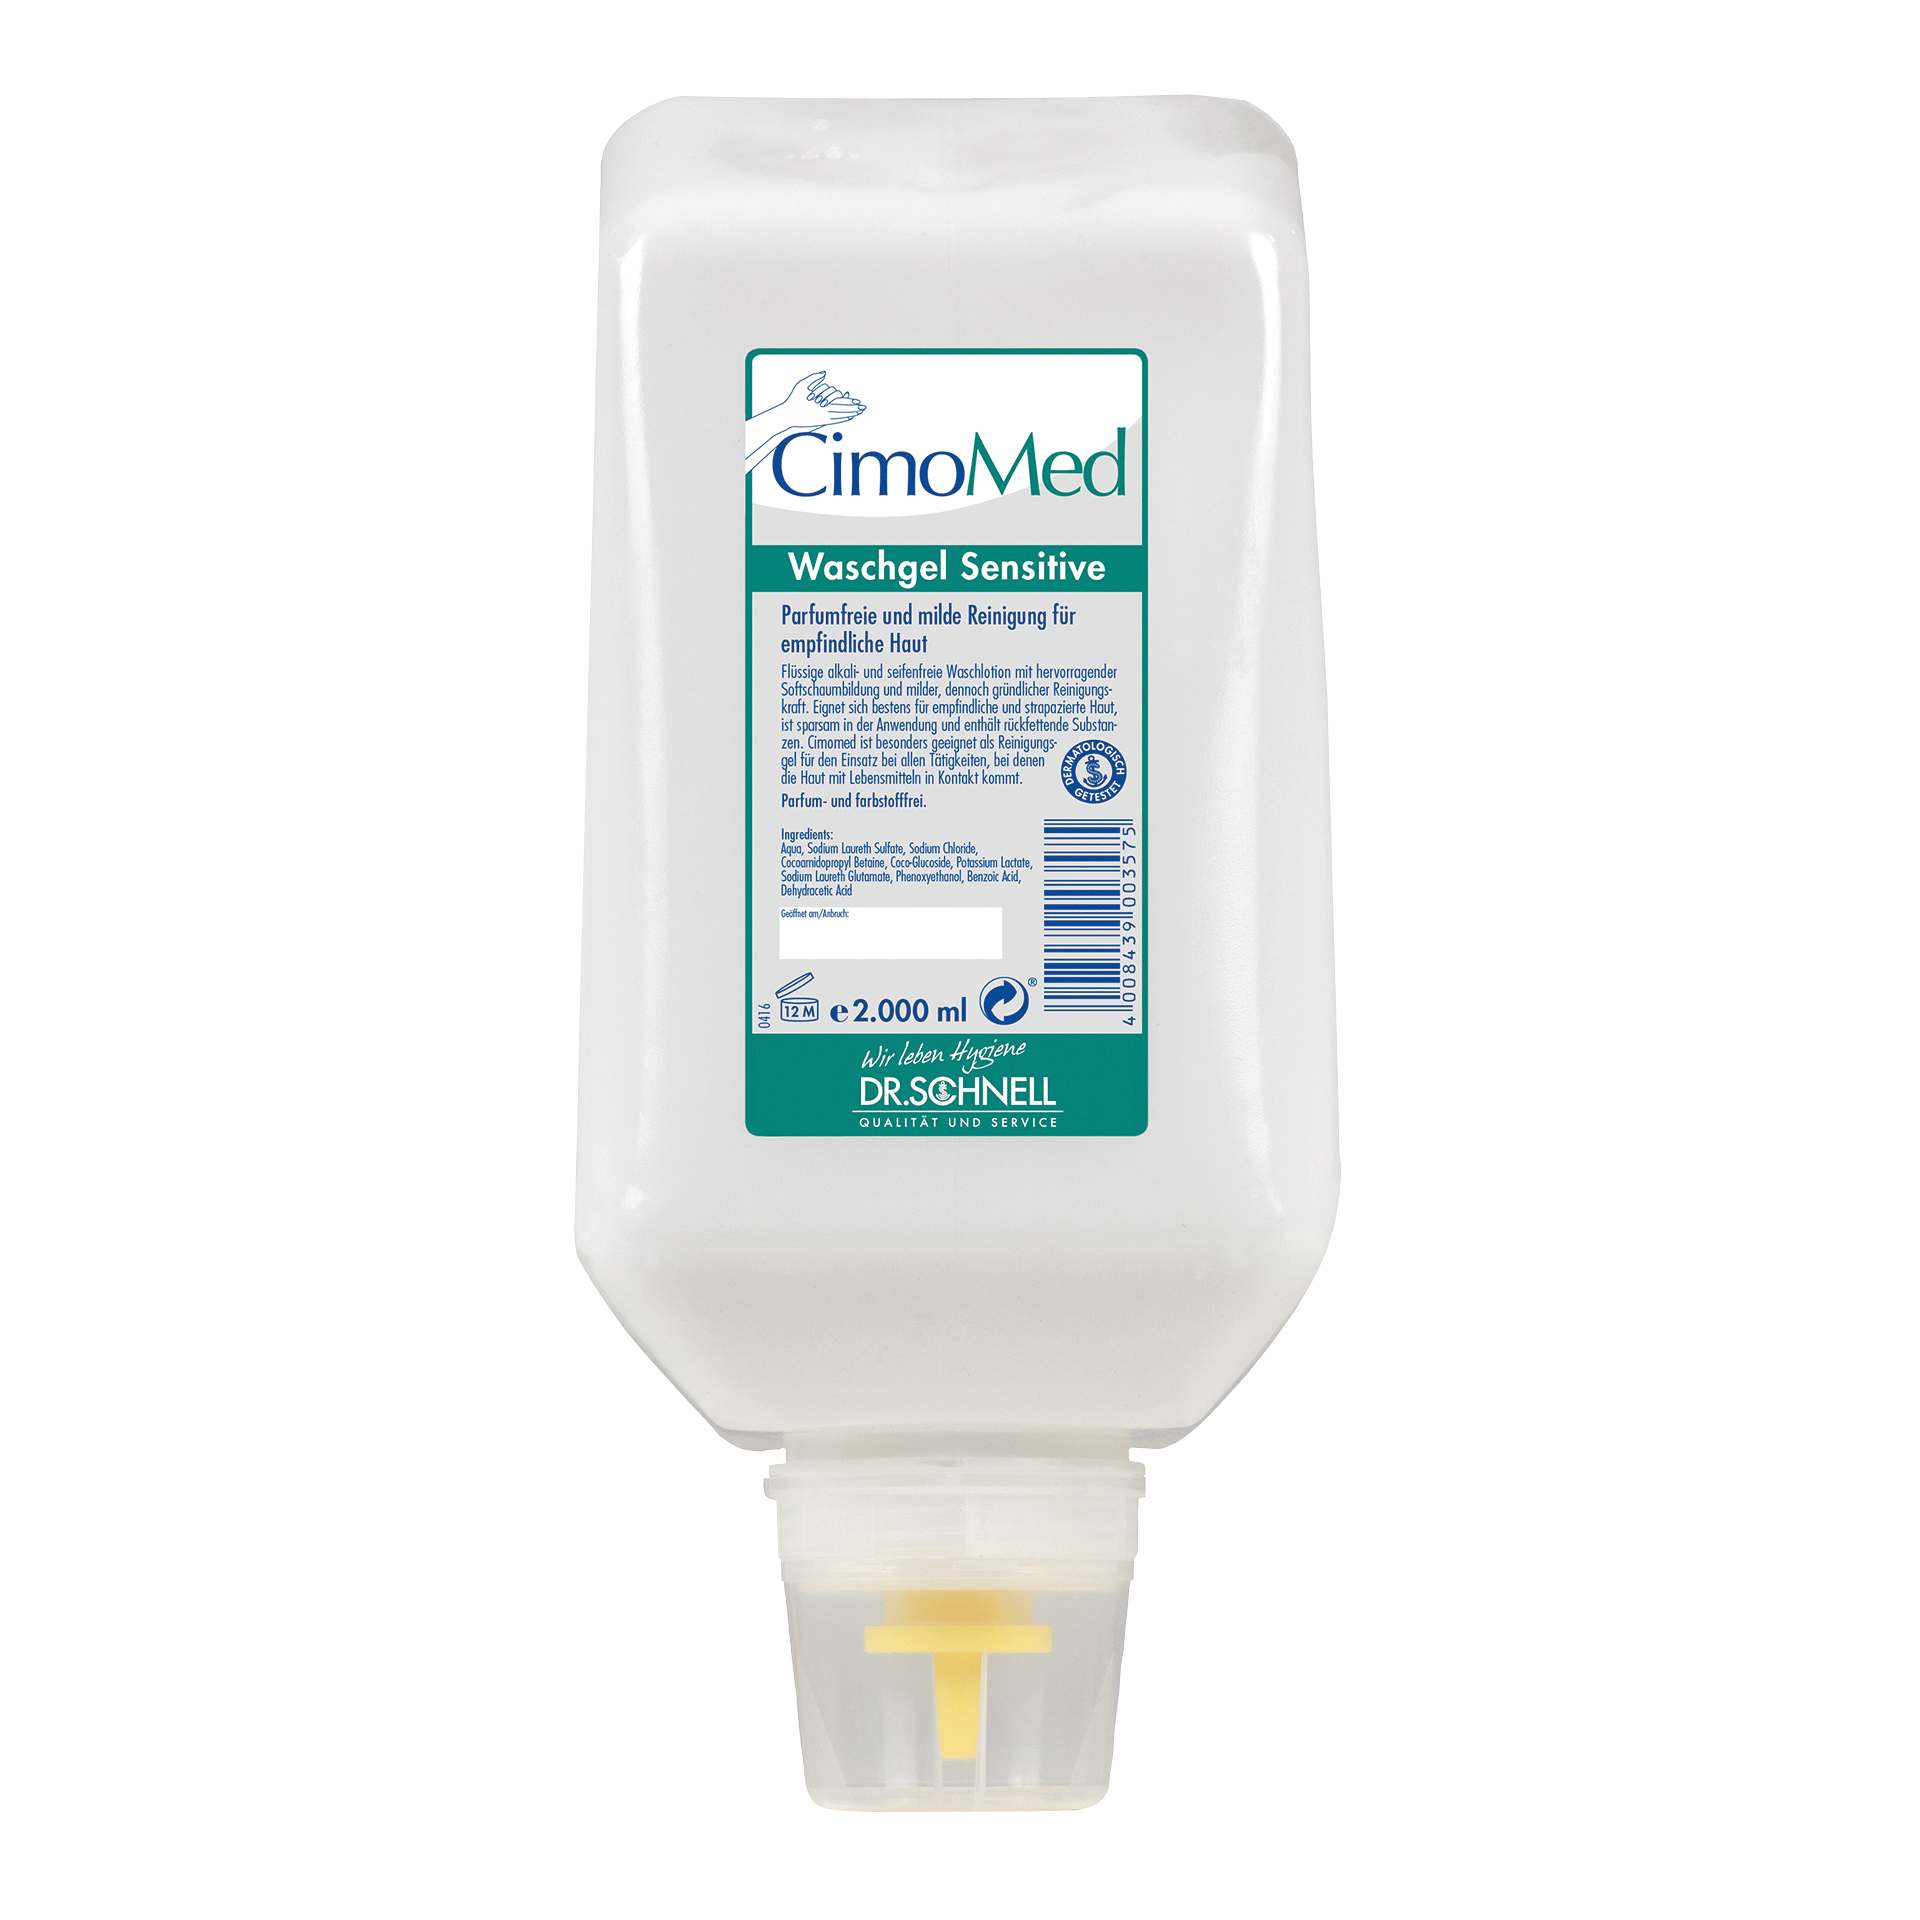 Dr. Schnell CimoMed Waschgel 2 L Industrieflasche